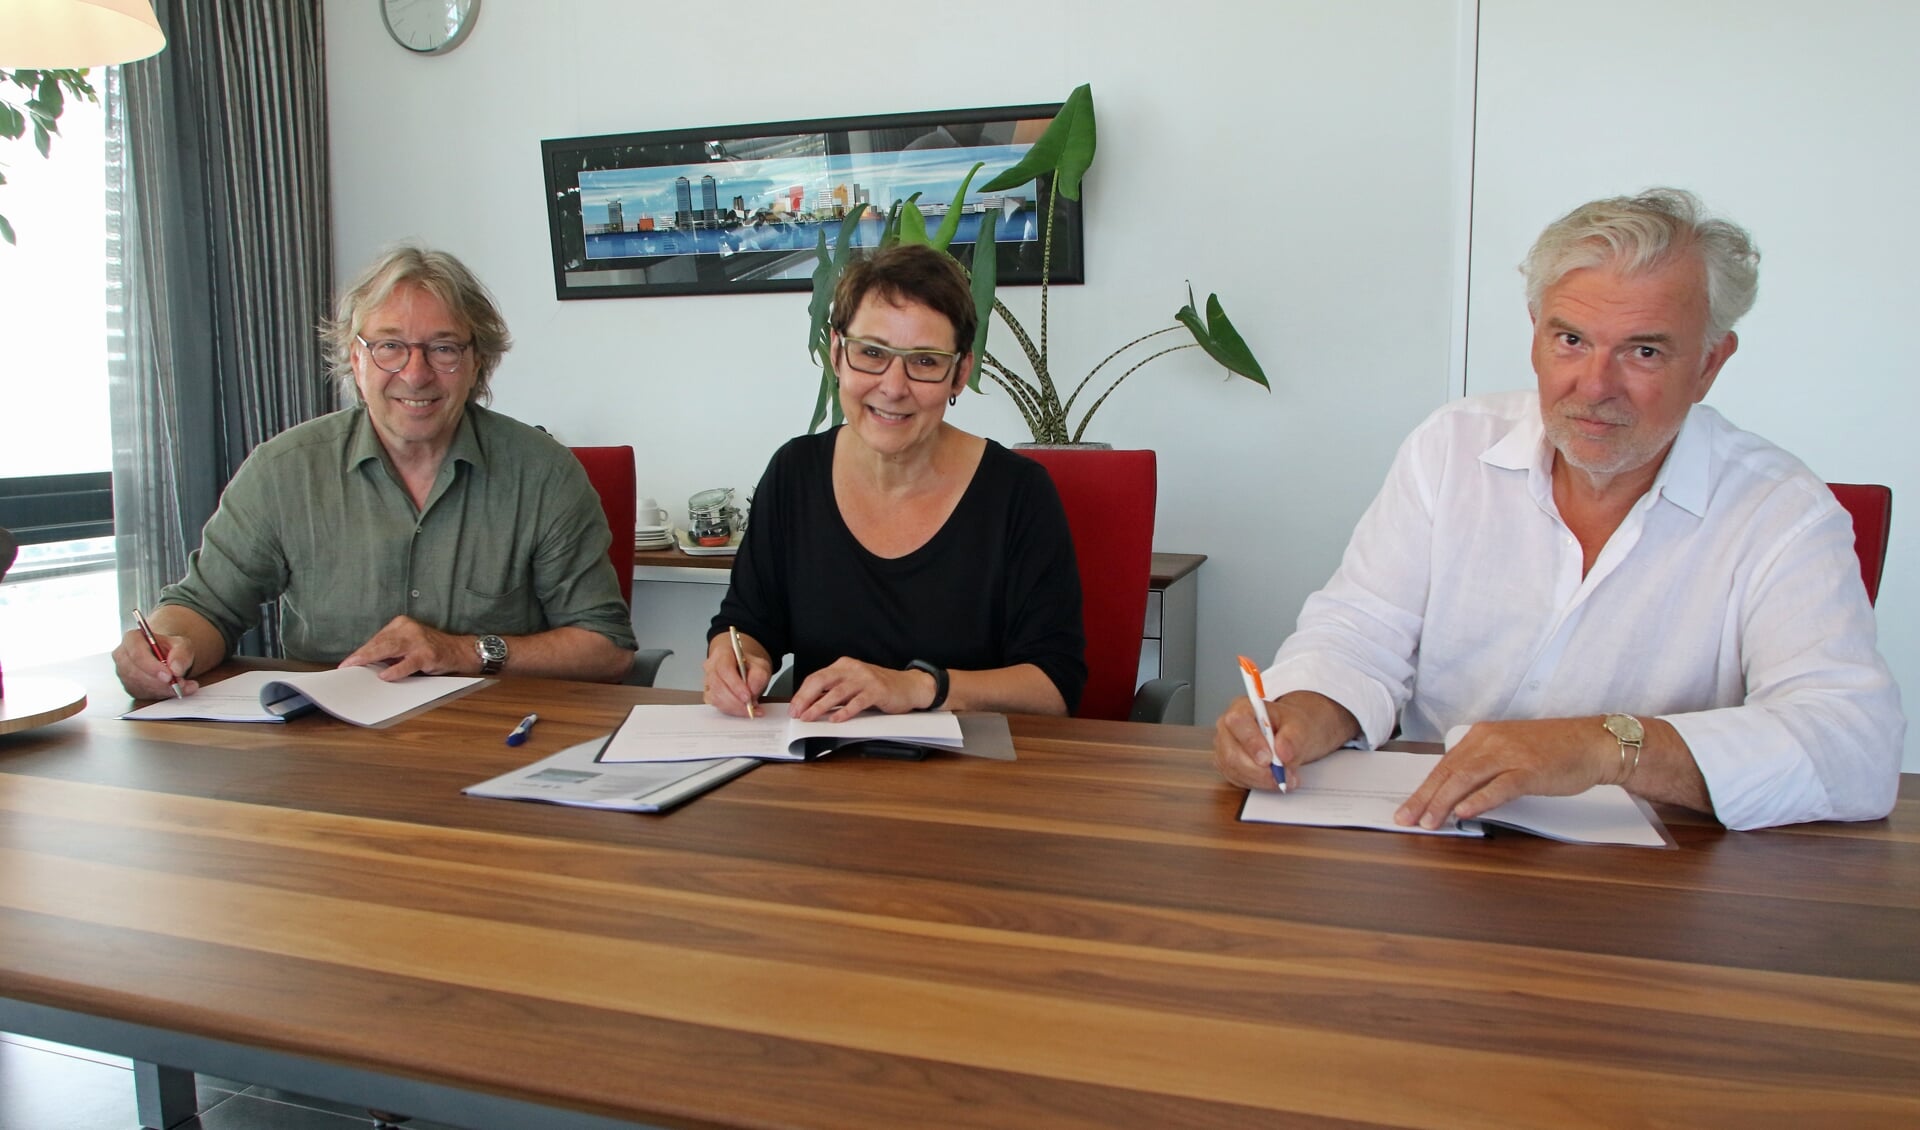 Het huurcontract werd ondertekend door van links naar rechts Dick Hakkenbroek, Anja Grootoonk (voorzitter Horizon College) en Dries Veen.